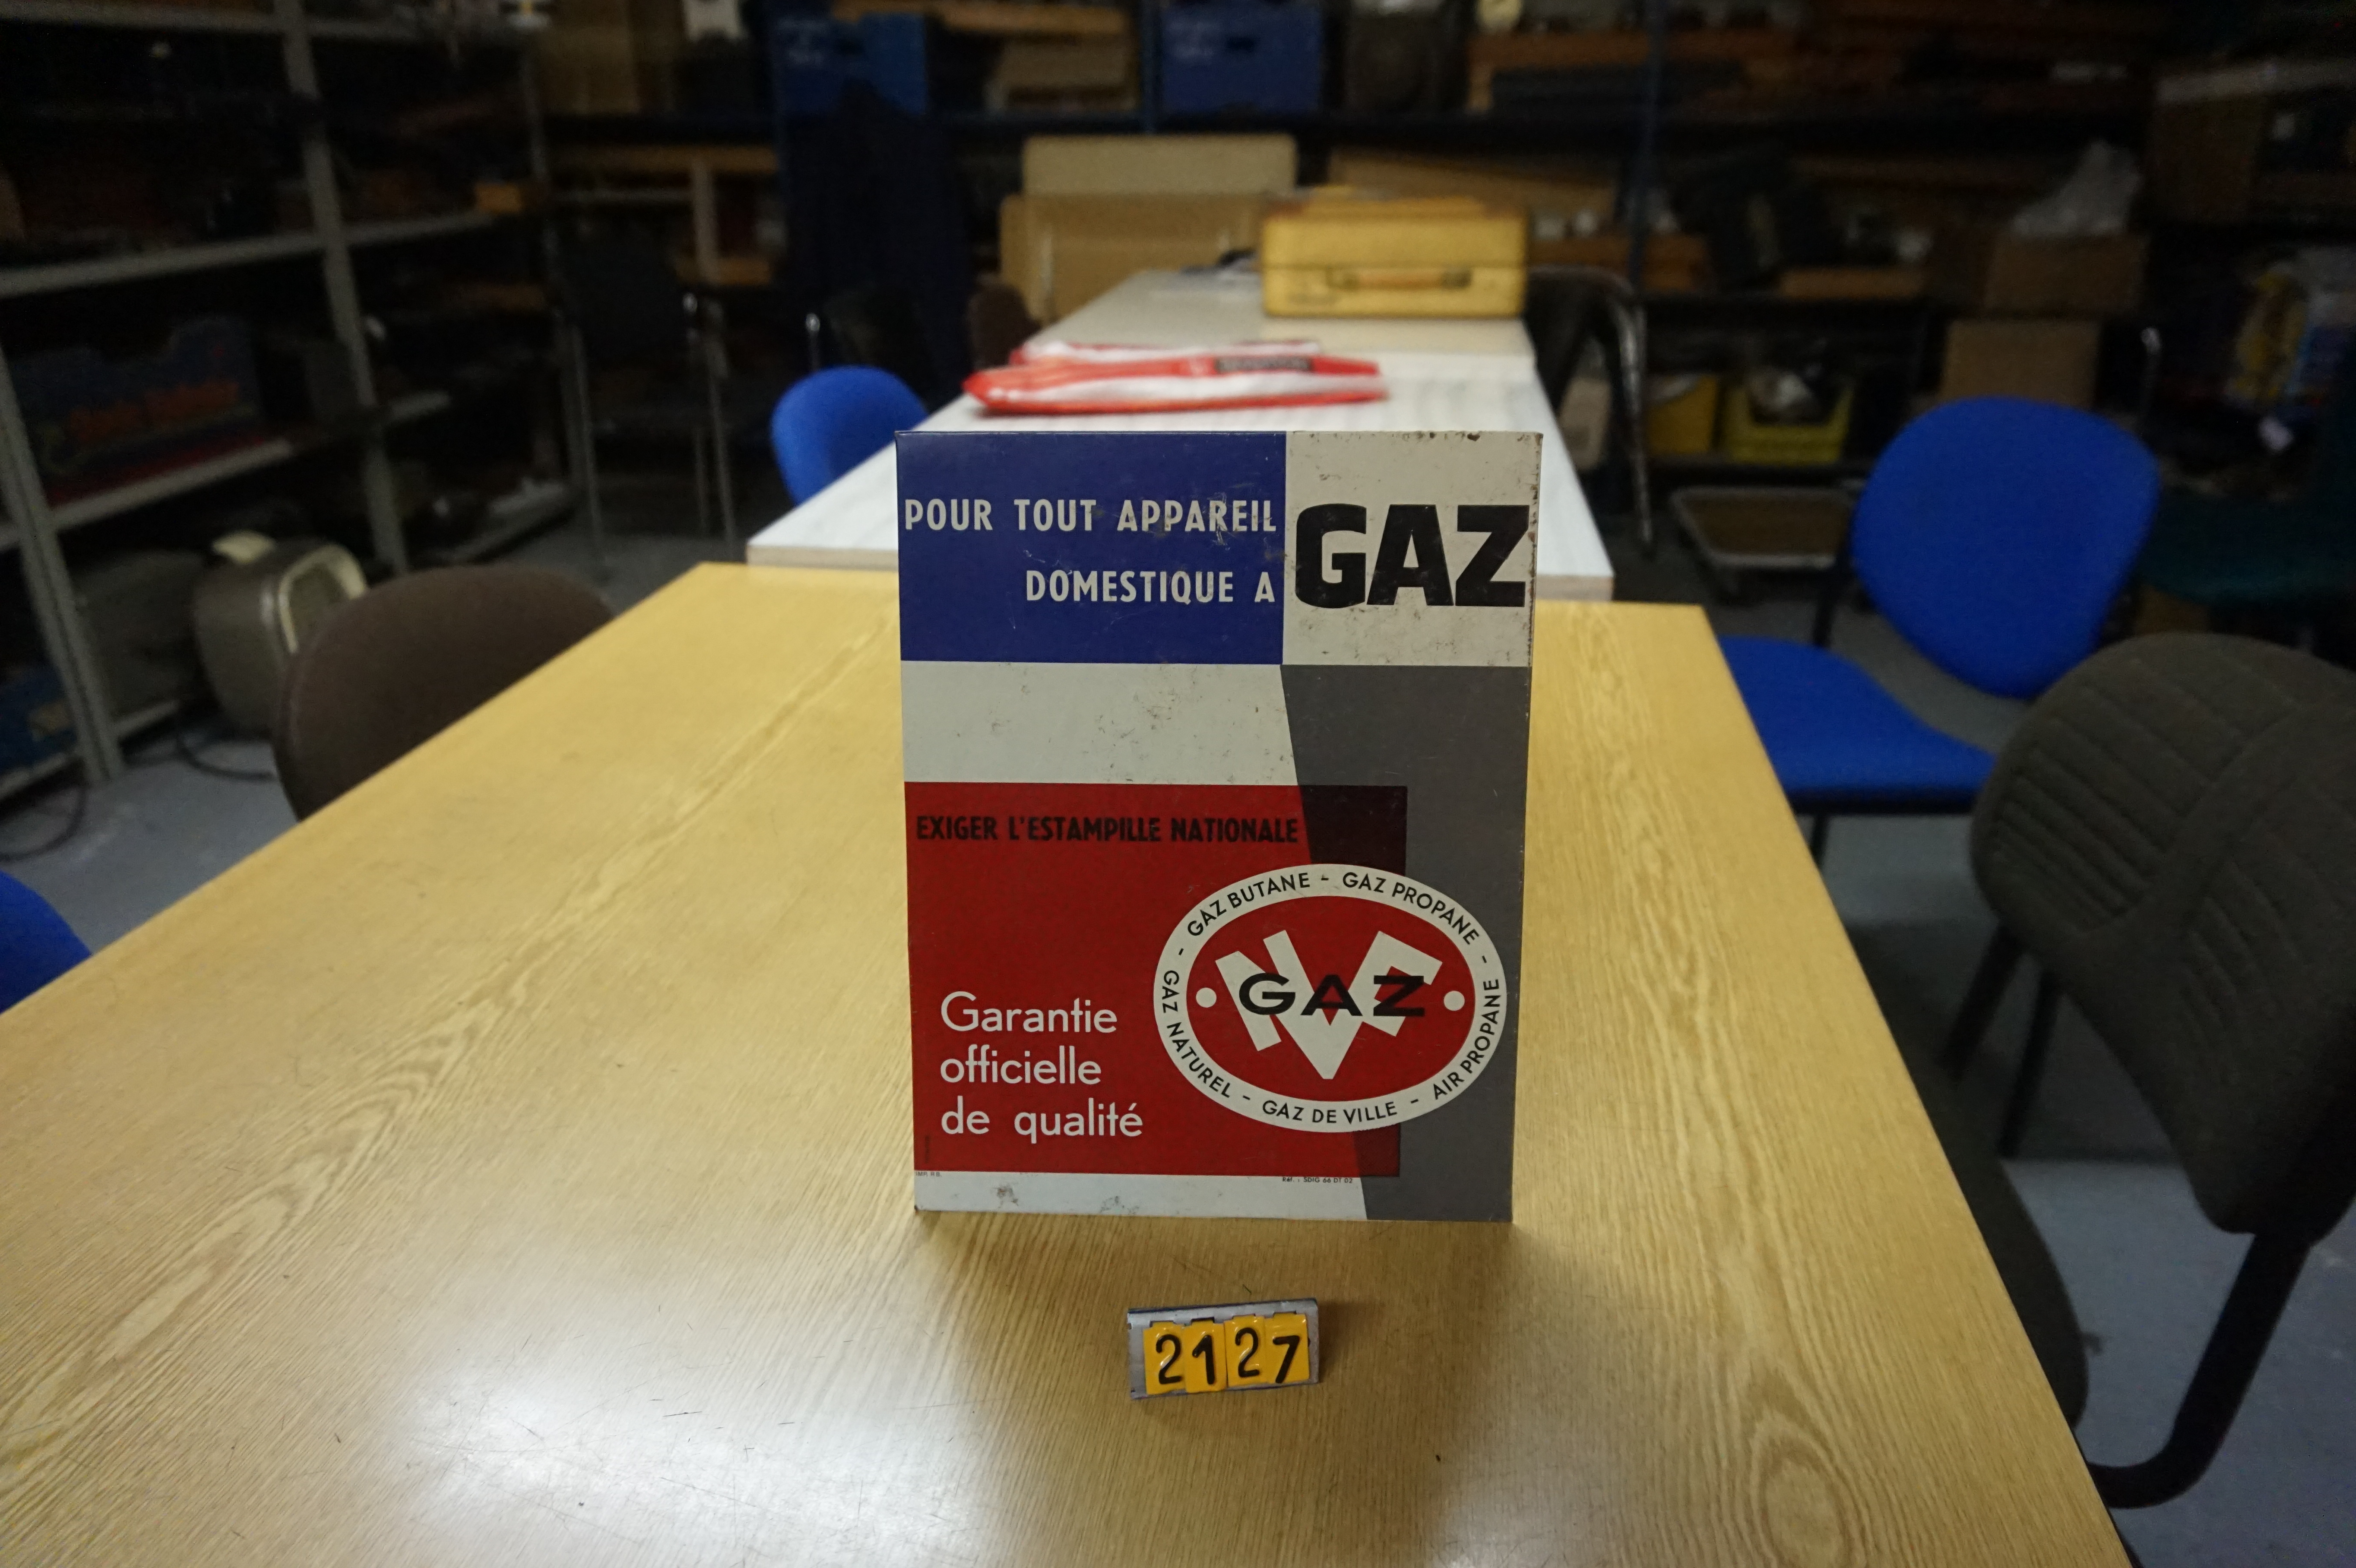  Collection ASPEG, pièce numéro 2127 : plaque gaz garantie qualite